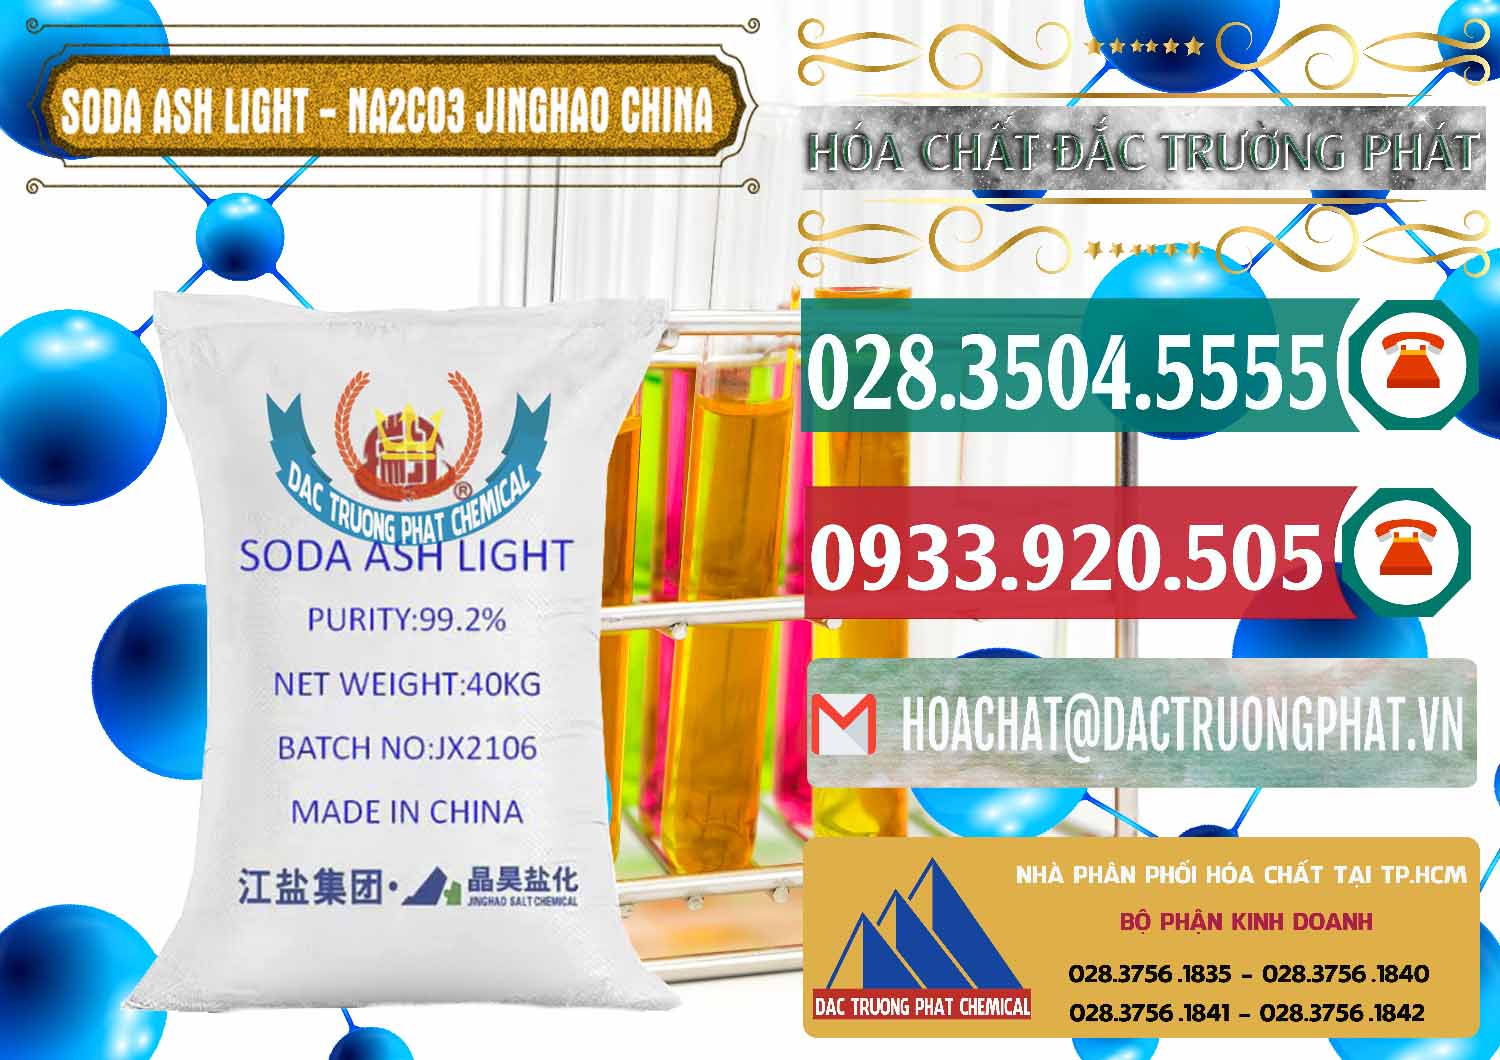 Cty chuyên bán và phân phối Soda Ash Light - NA2CO3 Jinghao Trung Quốc China - 0339 - Cty bán - cung cấp hóa chất tại TP.HCM - muabanhoachat.vn